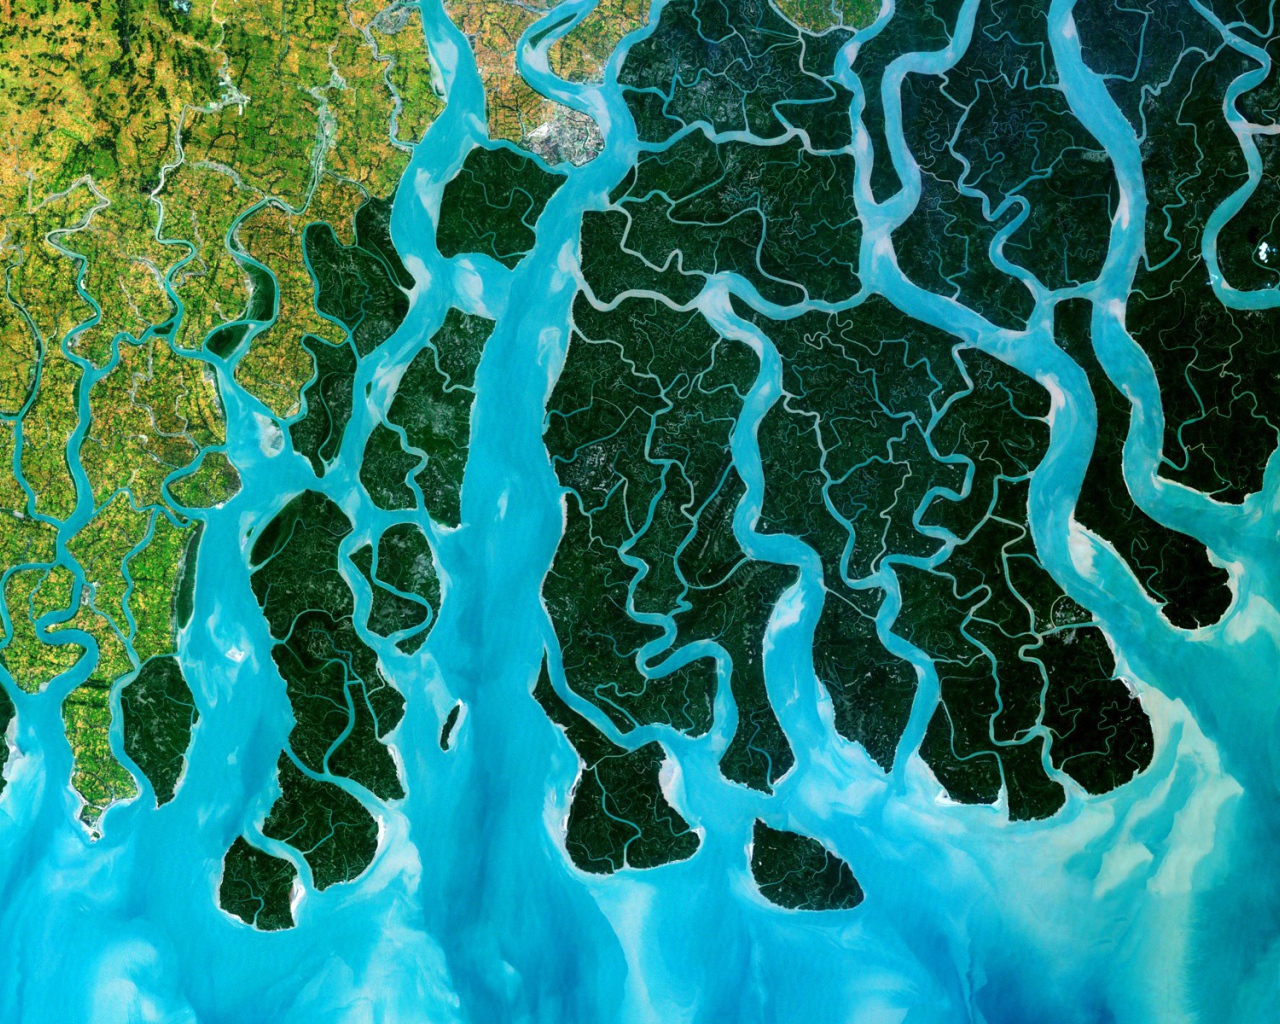 Устье реки Ганг, фото из космоса